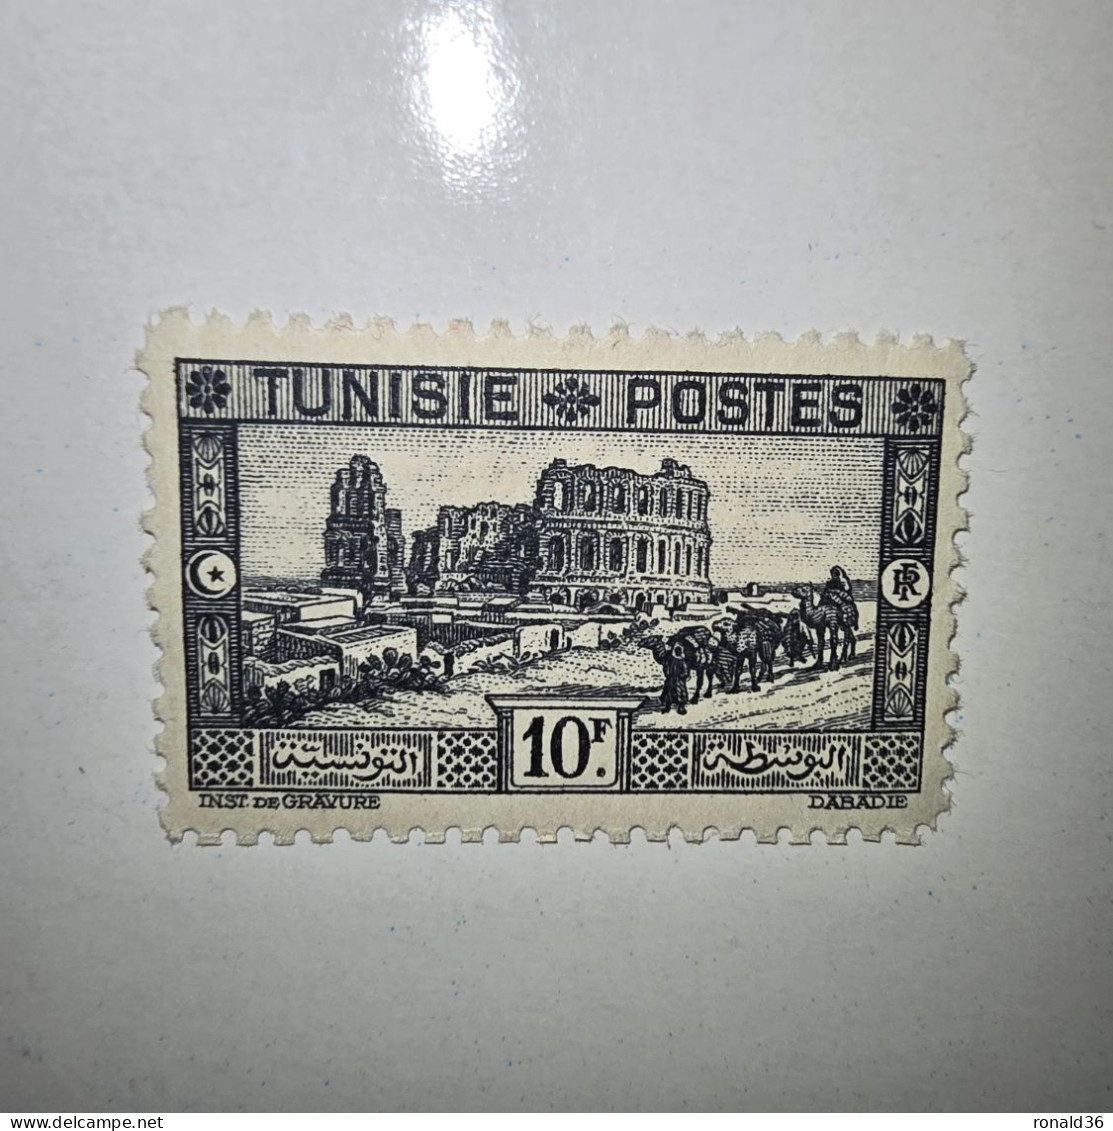 TUNISIE POSTES N° 179 10 Francs Noir F 1888 1938 FRANCE Timbre Poste Francais Ex Colonie Française Protectorat - Ongebruikt